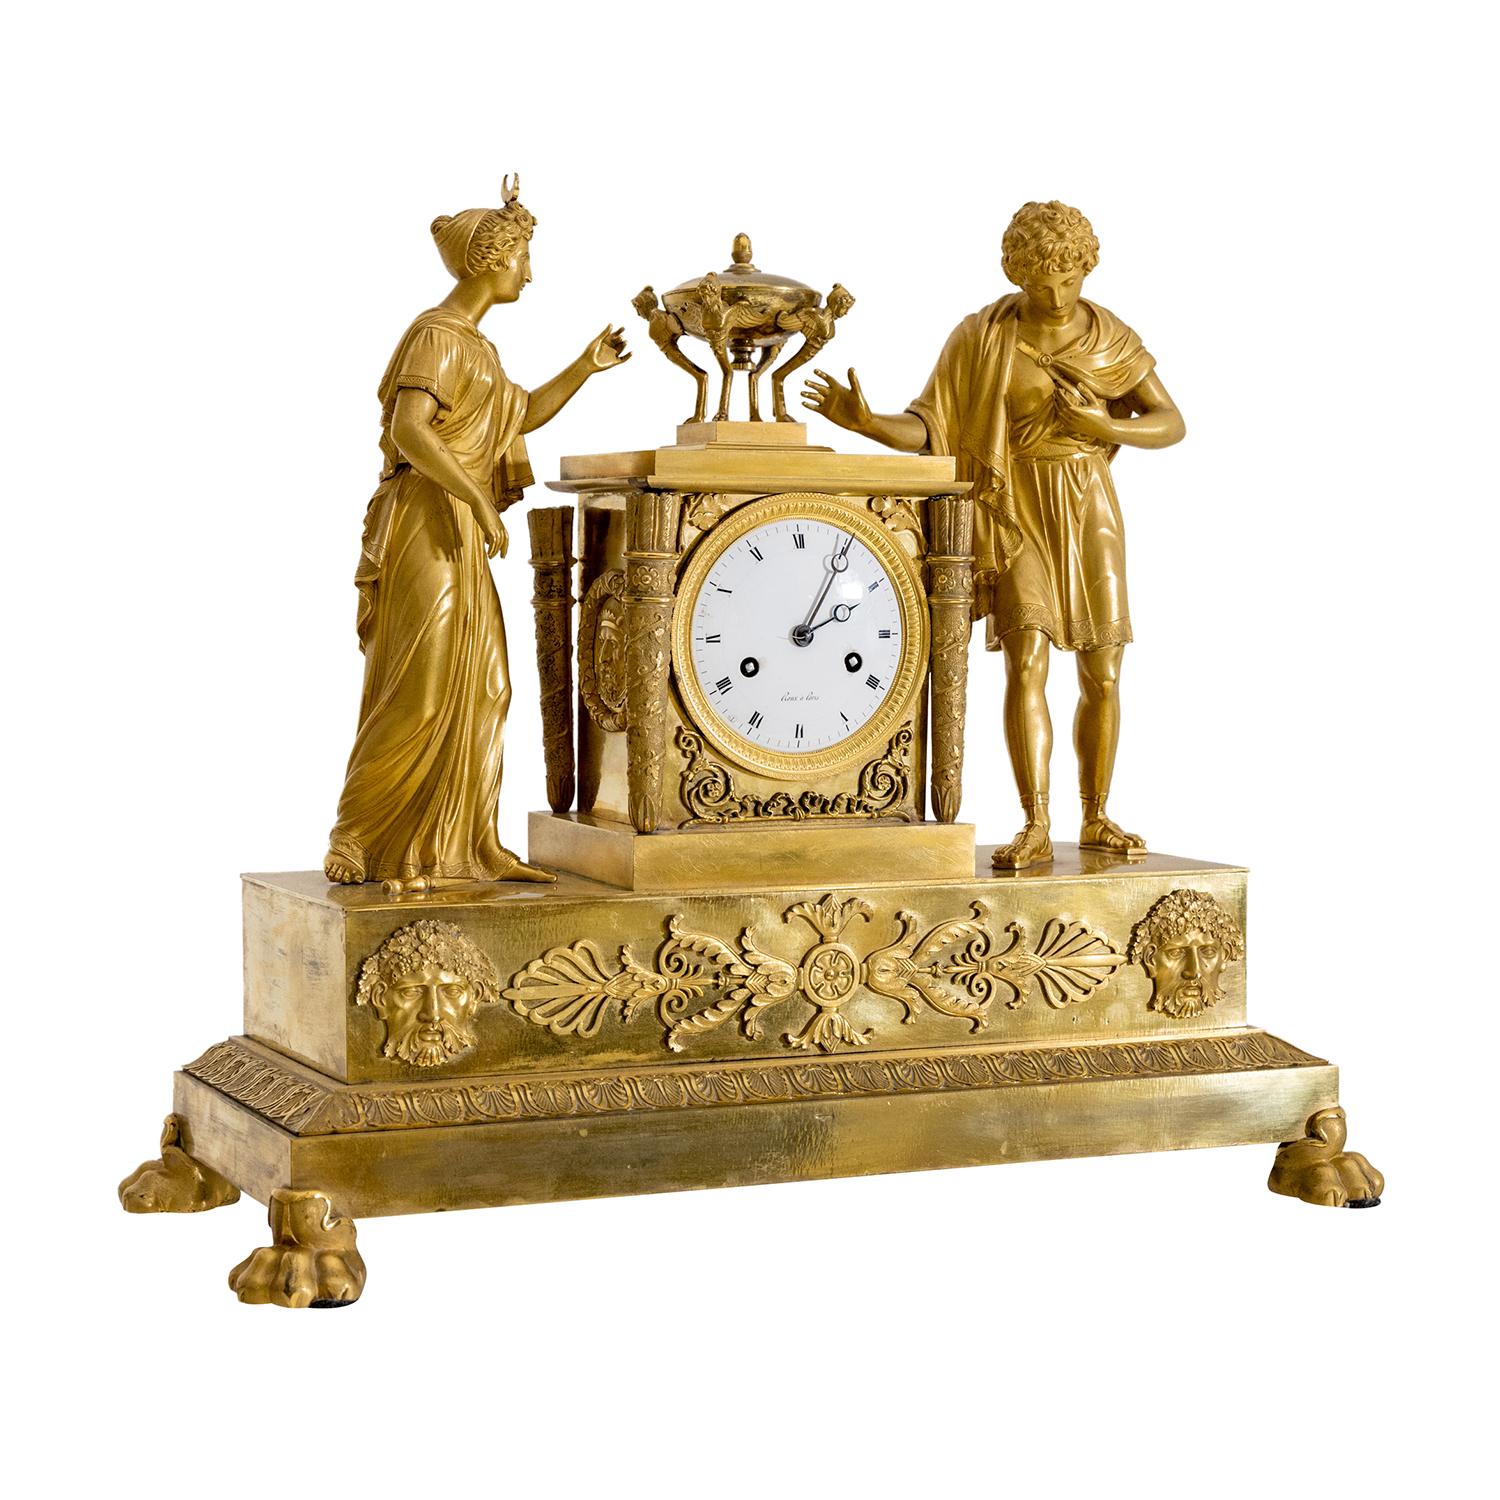 Eine goldene, antike französische Tischuhr, Pendel aus handgefertigter, feuervergoldeter Bronze, in gutem Zustand. Das runde Emailzifferblatt der Pariser Pendule ist mit römischen Ziffern auf weißem Grund versehen, die durch einen polierten